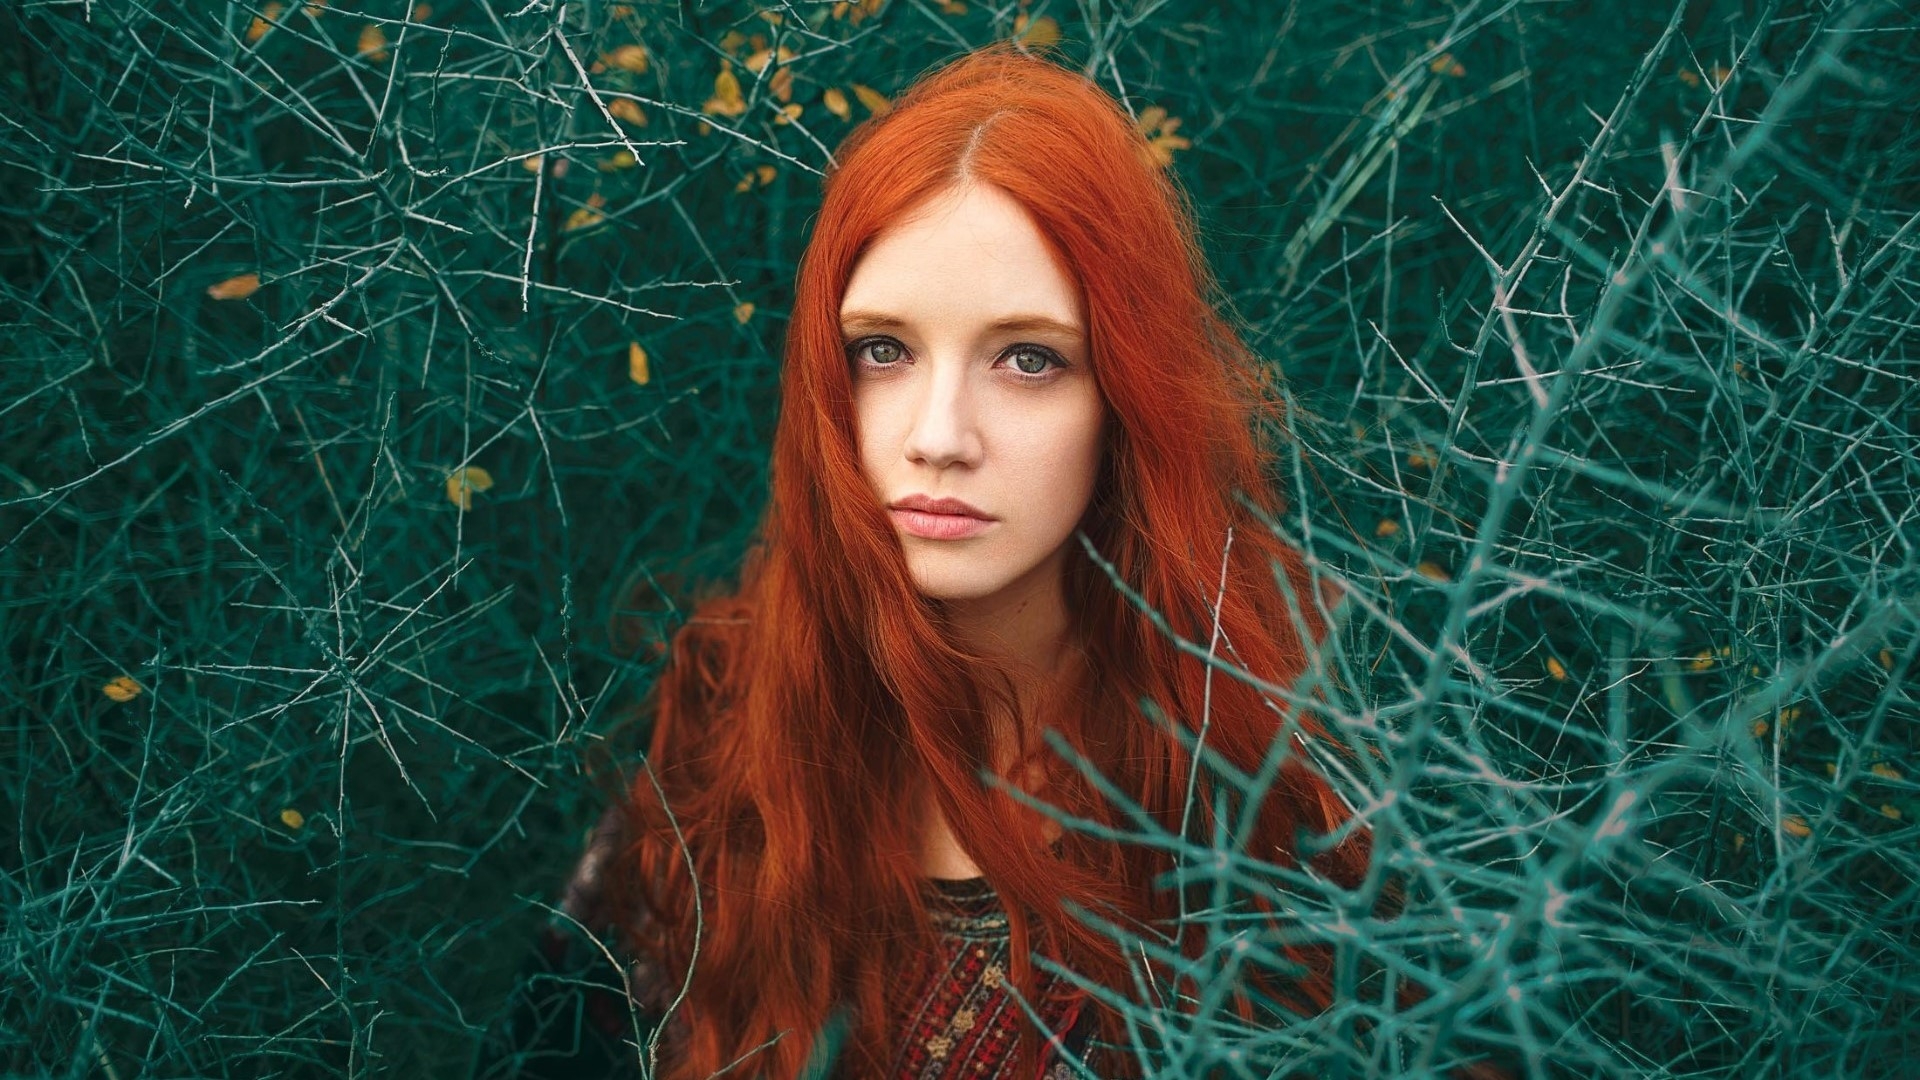 Фото портрет обои рыжая длинные волосы - бесплатные картинки на Fonwall